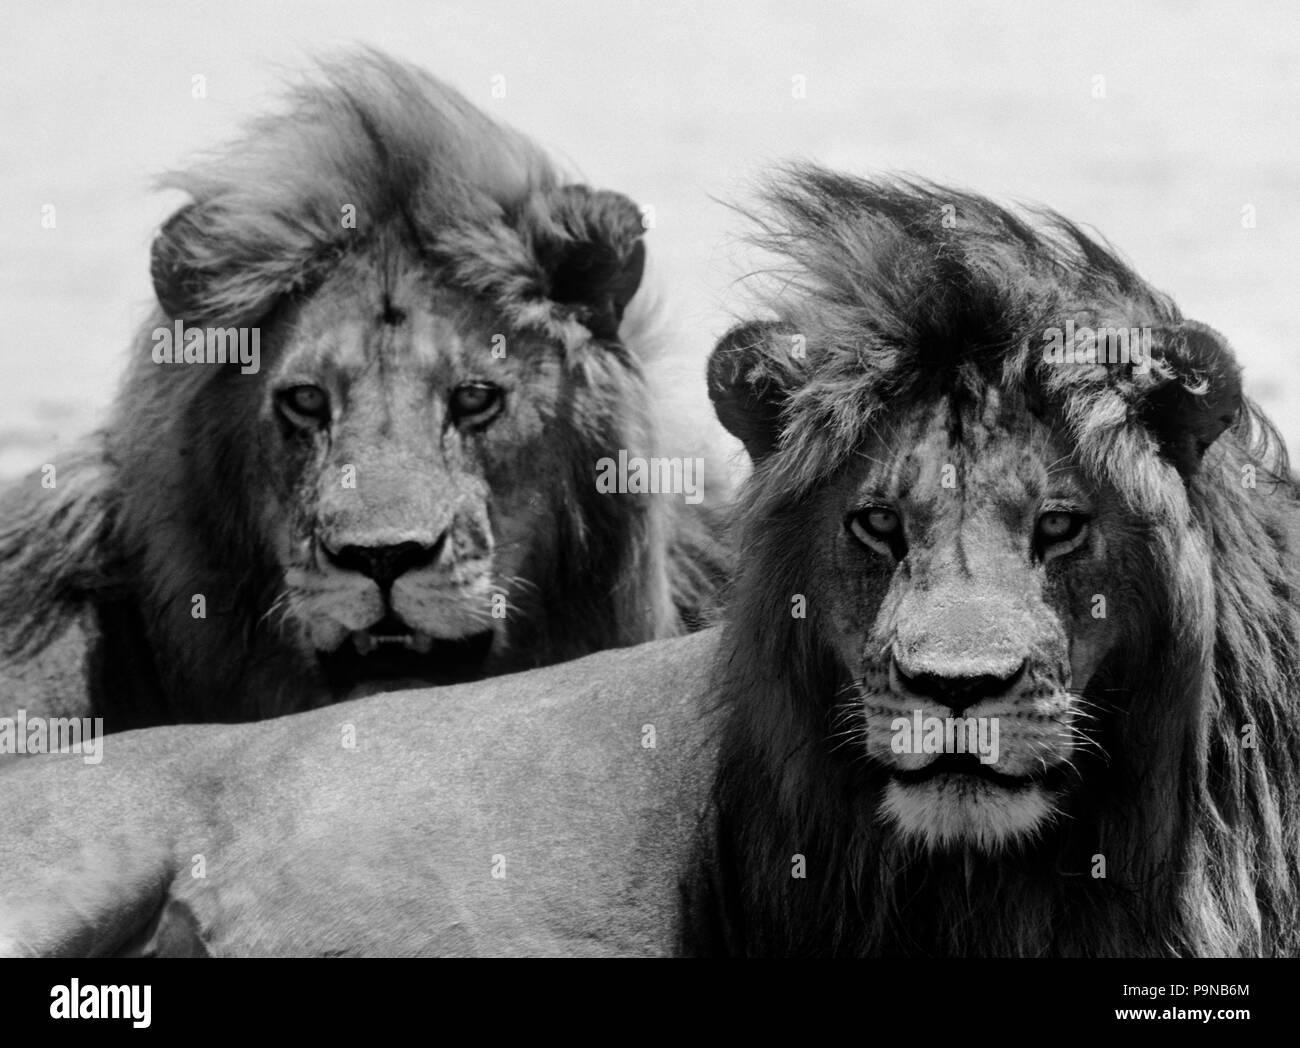 Diese ausgewachsenen Löwen Brüder (Pantera LEO) leicht ihren Stolz verteidigen können - Serengeti, Tansania Stockfoto